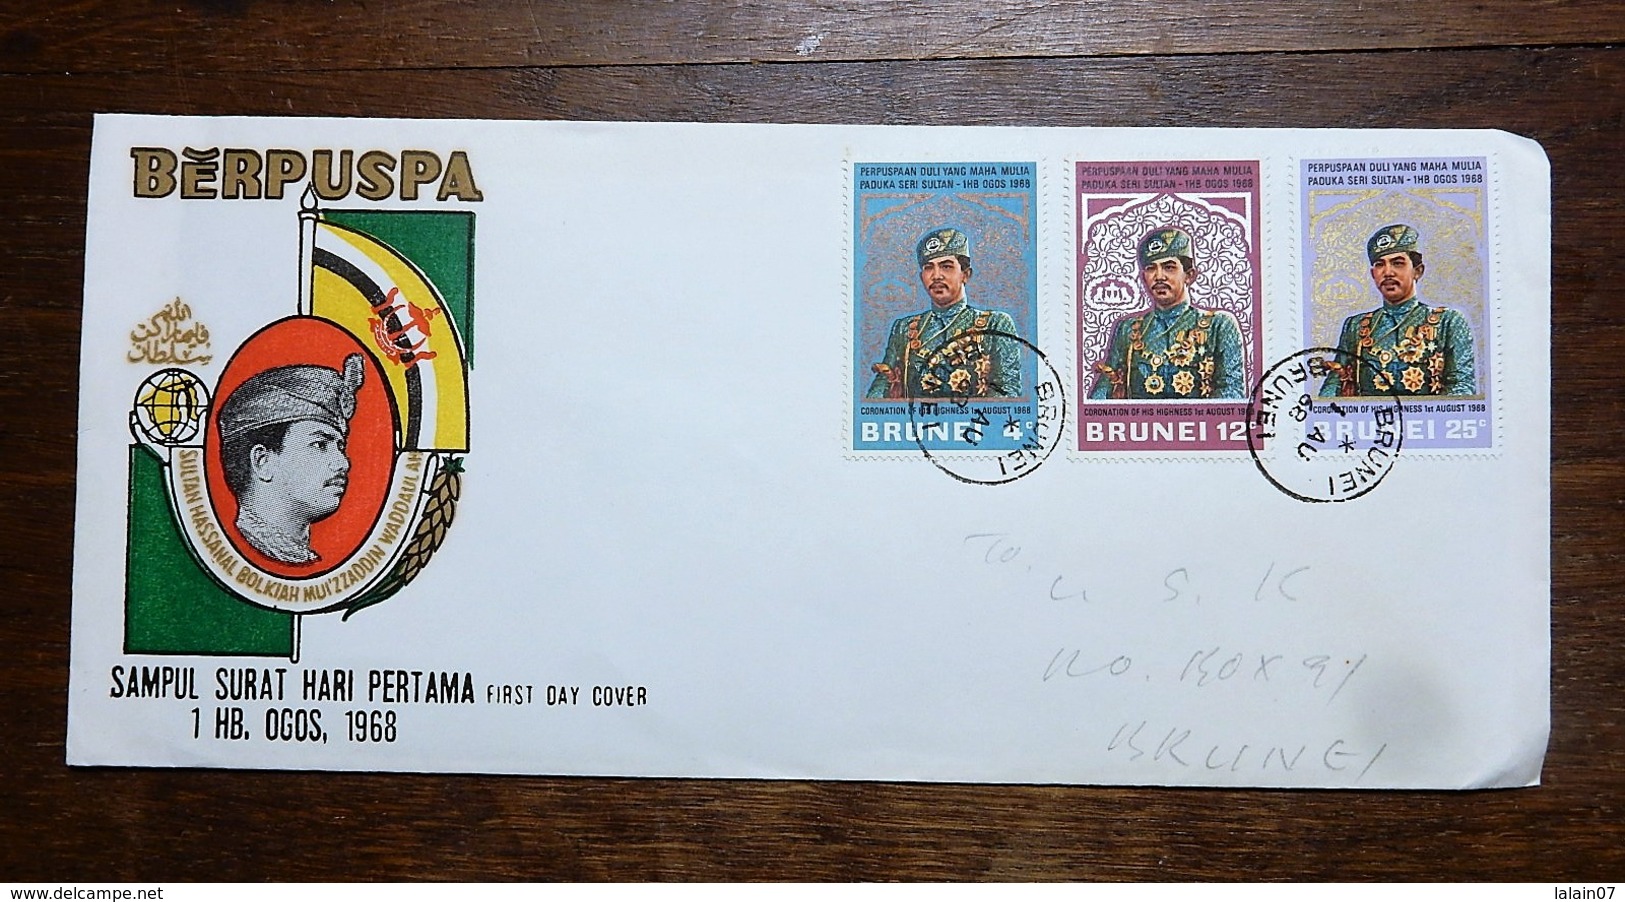 BRUNEI : BERPUSPA : Sampul Surat Hari Pertama , First Day Cover, 1 HB. OGOS, 1968, 3 Stamps - Brunei (1984-...)